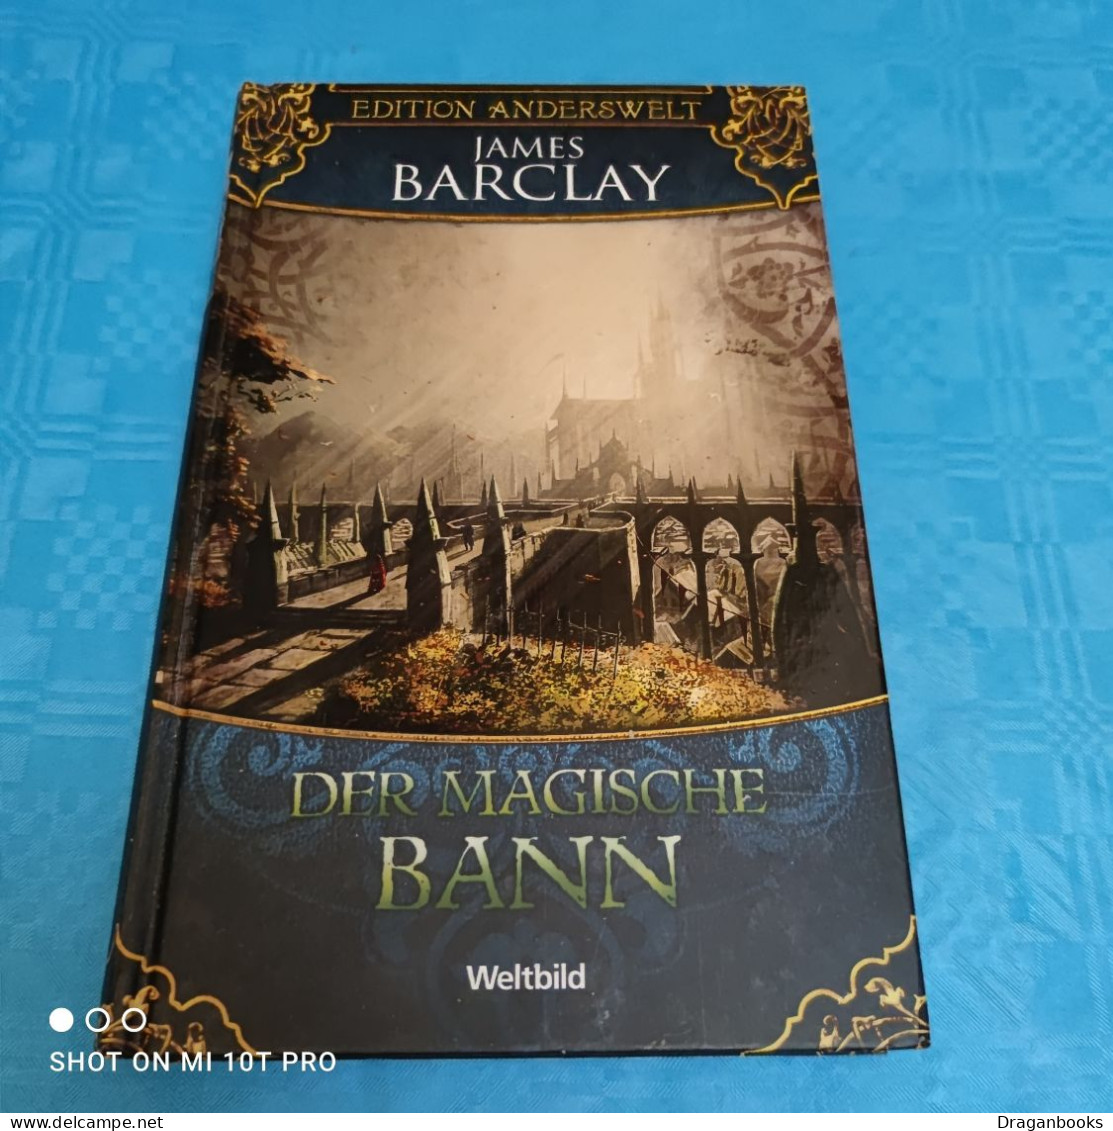 James Barclay - Edition Anderswelt - Der Magische Bann - Fantasy